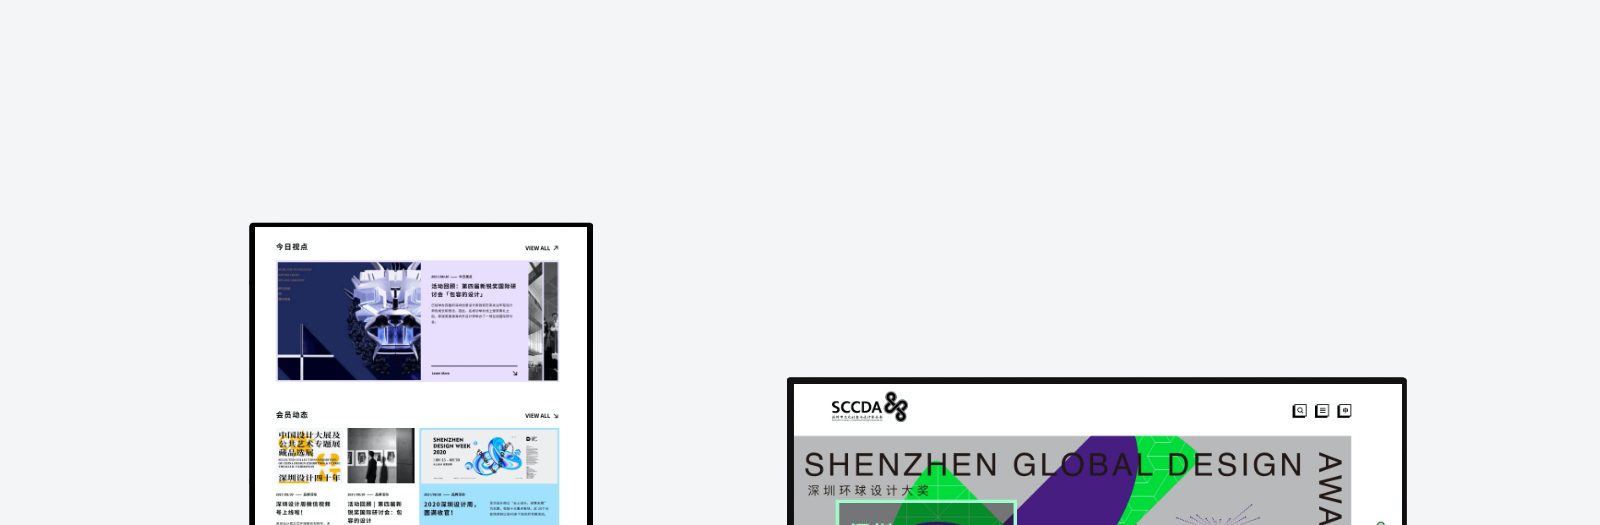 深圳市文化创意与设计联合会网站0-素马设计作品